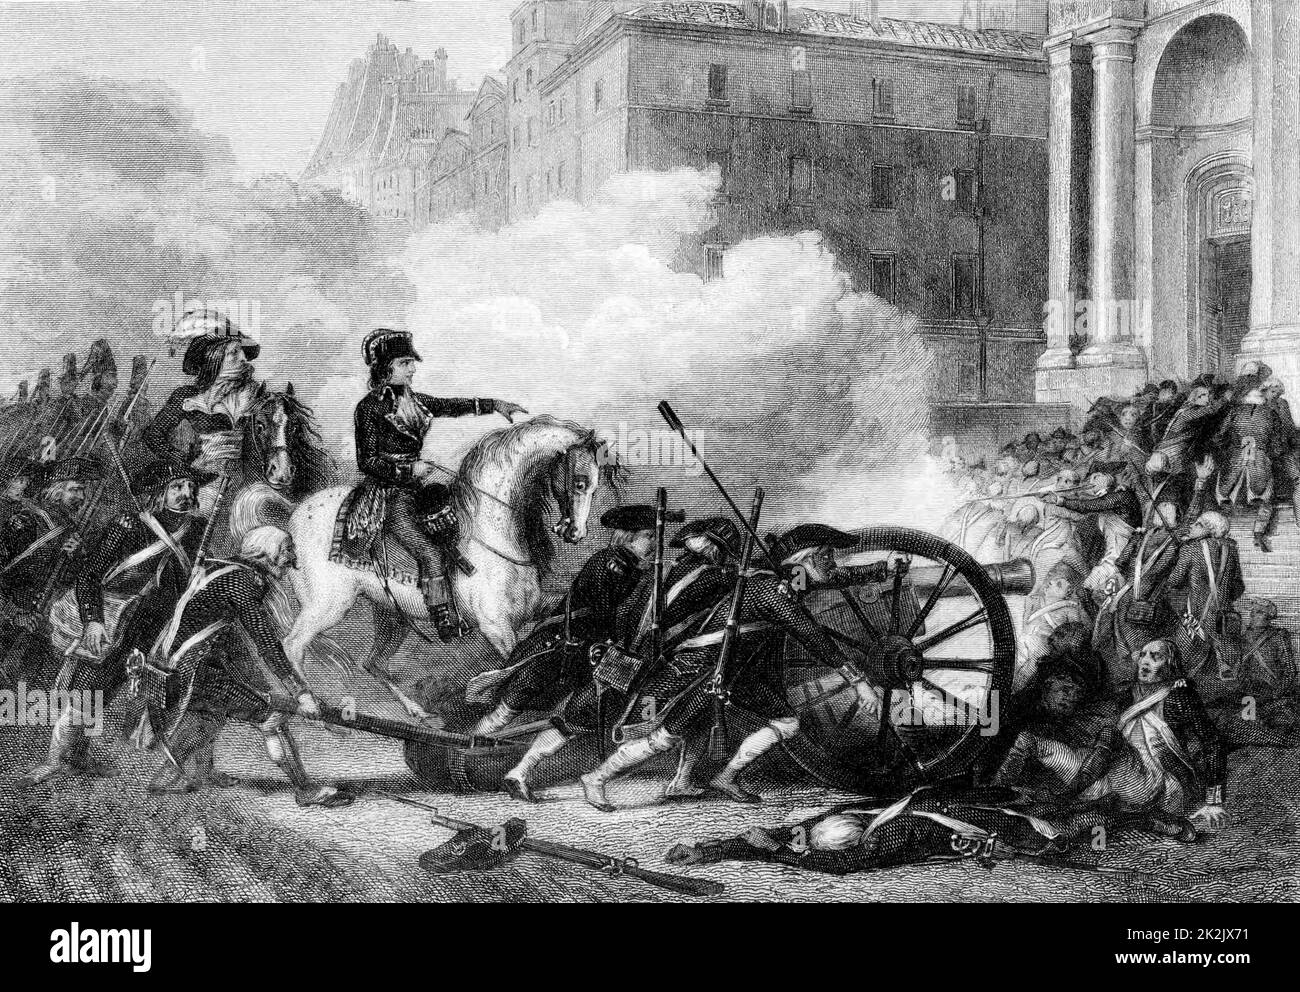 Französische Revolution 13. Vendemiaire 1765 (5. Oktober). Der junge republikanische Offizier Napoleon Bonaparte befiehlt, auf die Konterrevolutionäre in Paris zu schießen. Auf den Stufen von Eglise Saint-Roch werden 300 Tote sterben. Gravur Stockfoto